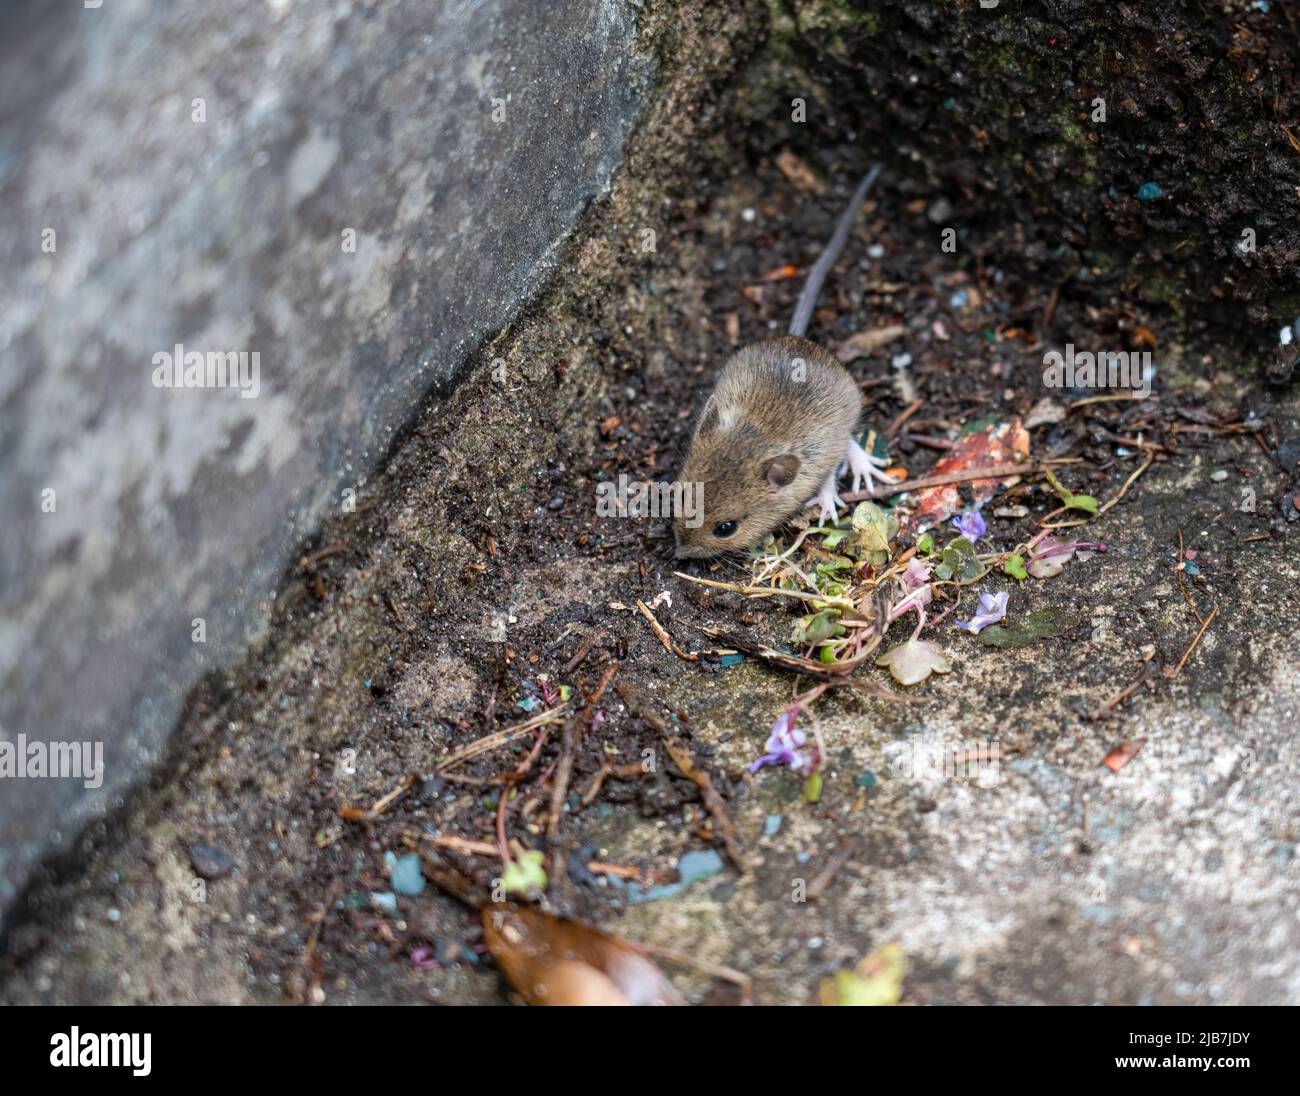 Une souris en bois appelée souris à longue queue (Apodemus sylvaticus) se nourrissant de marches en béton Banque D'Images